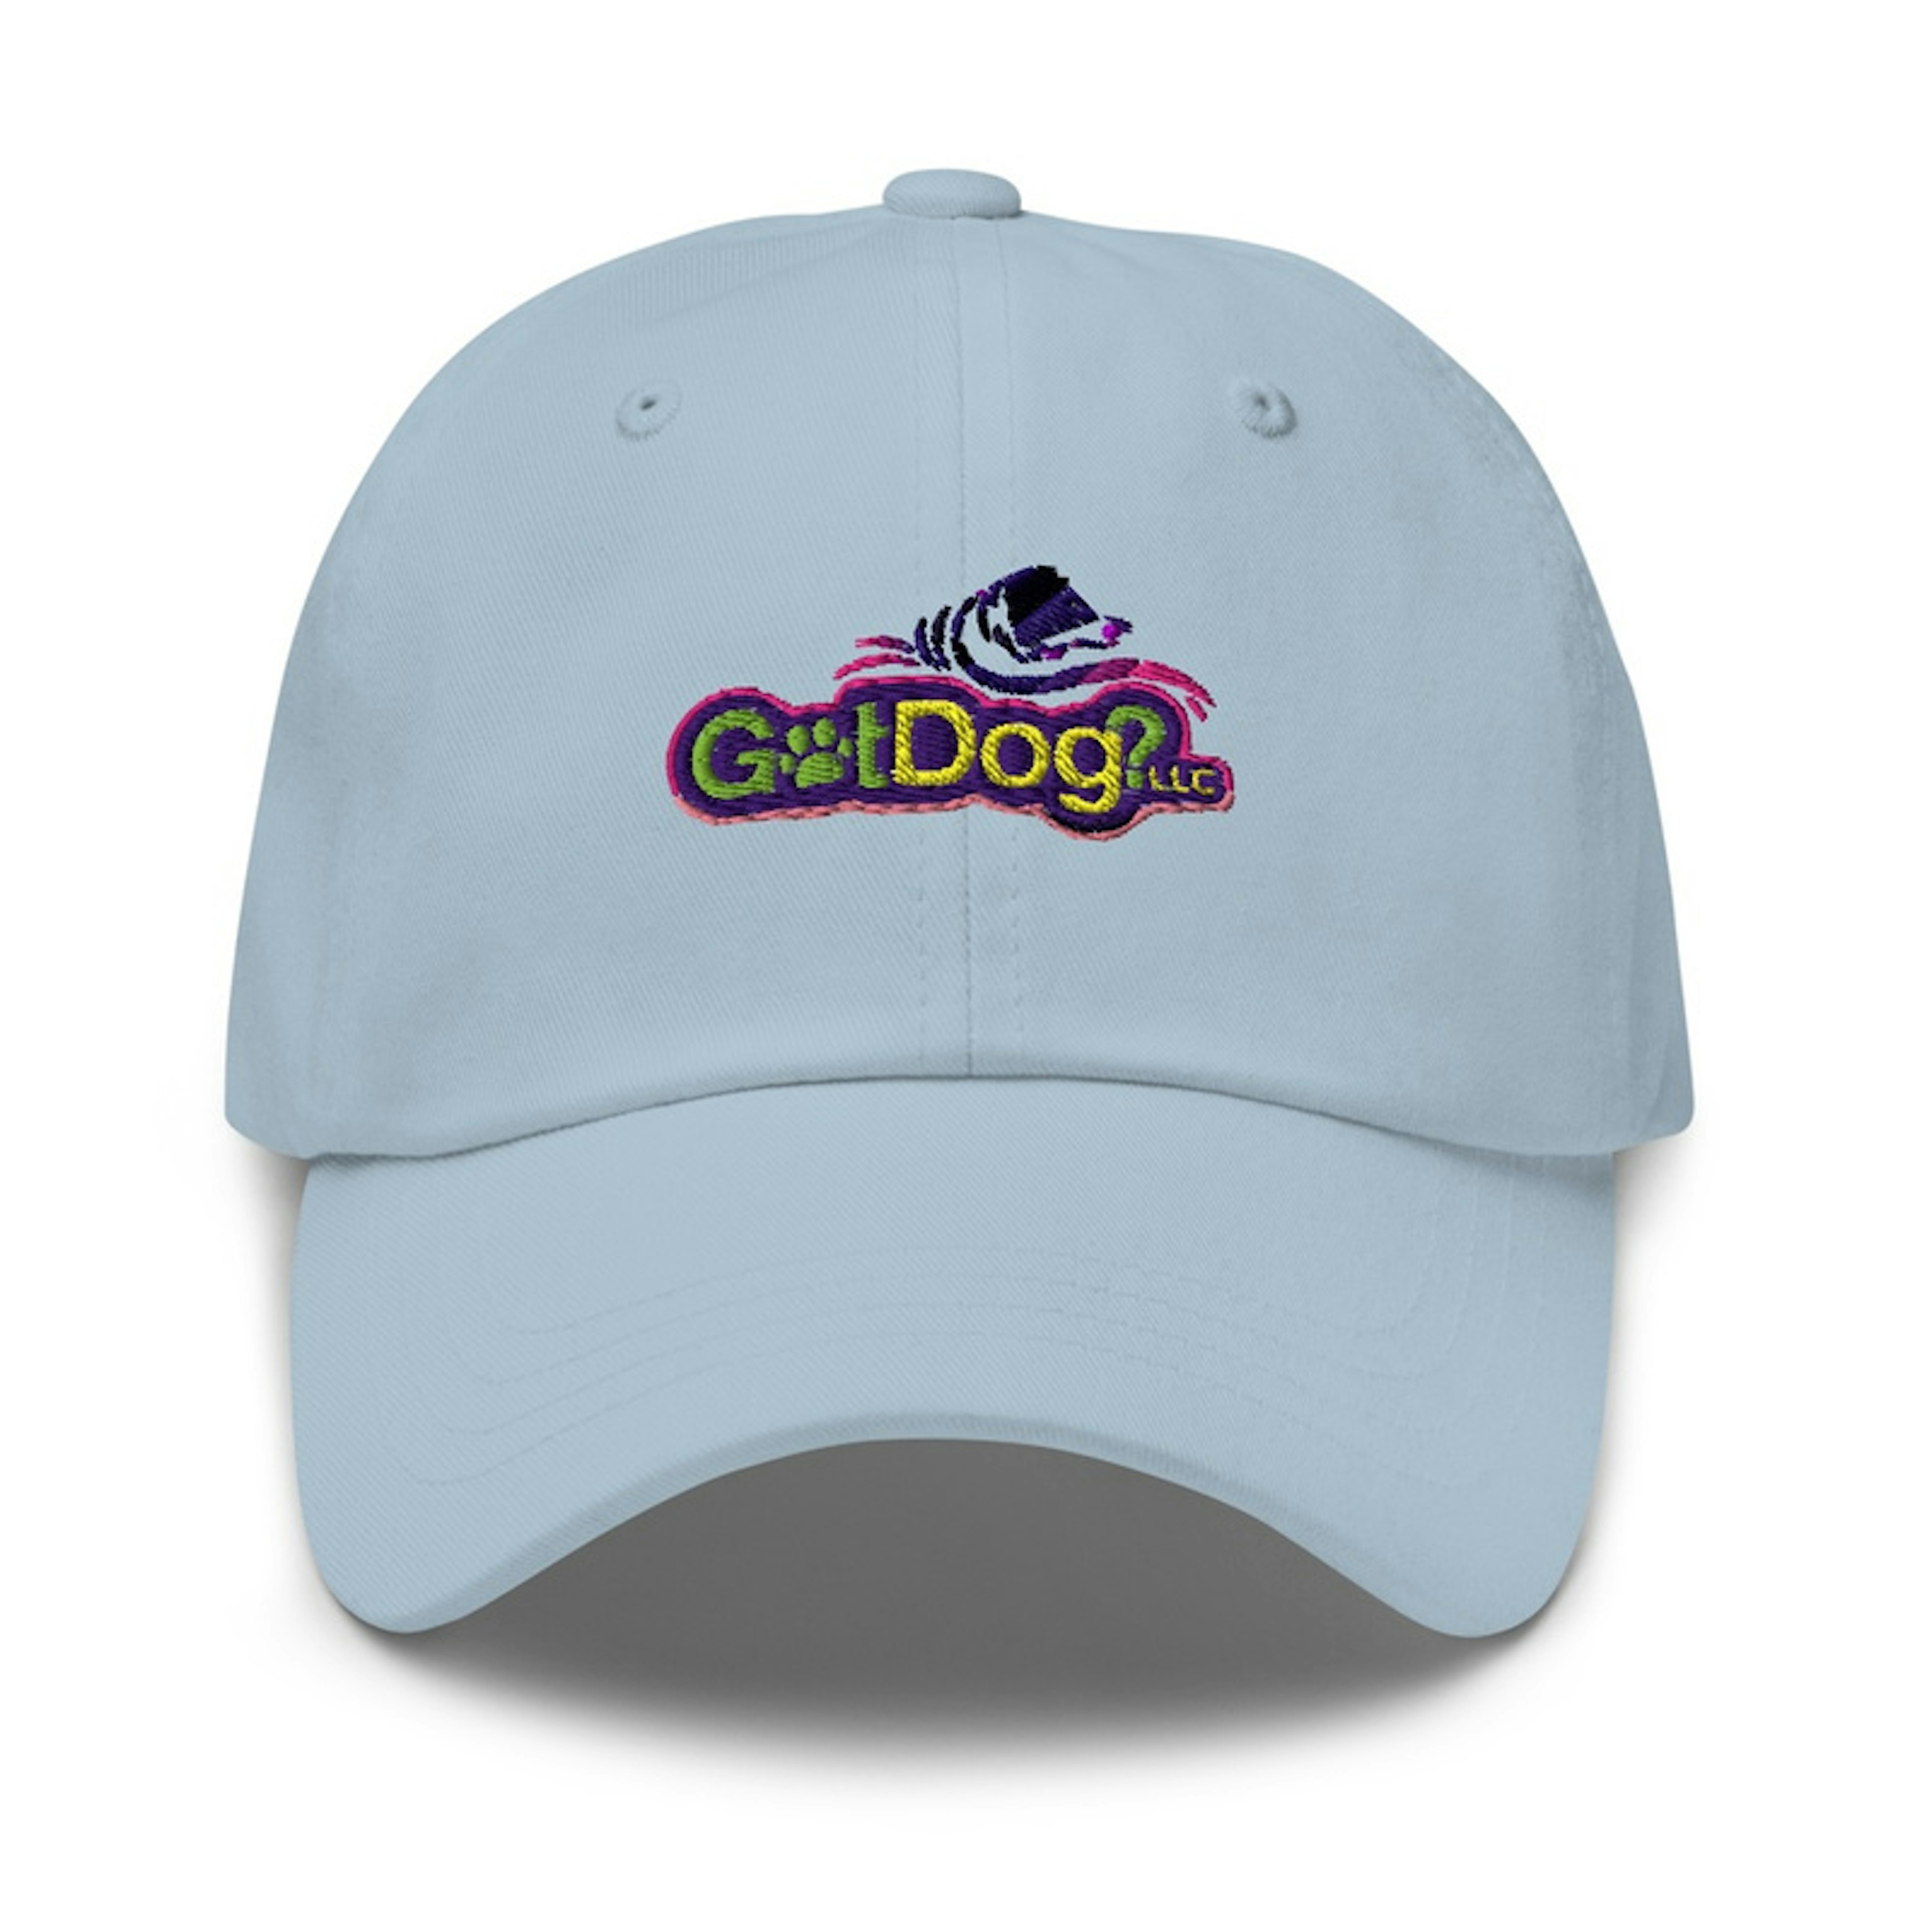 GotDog? Hat